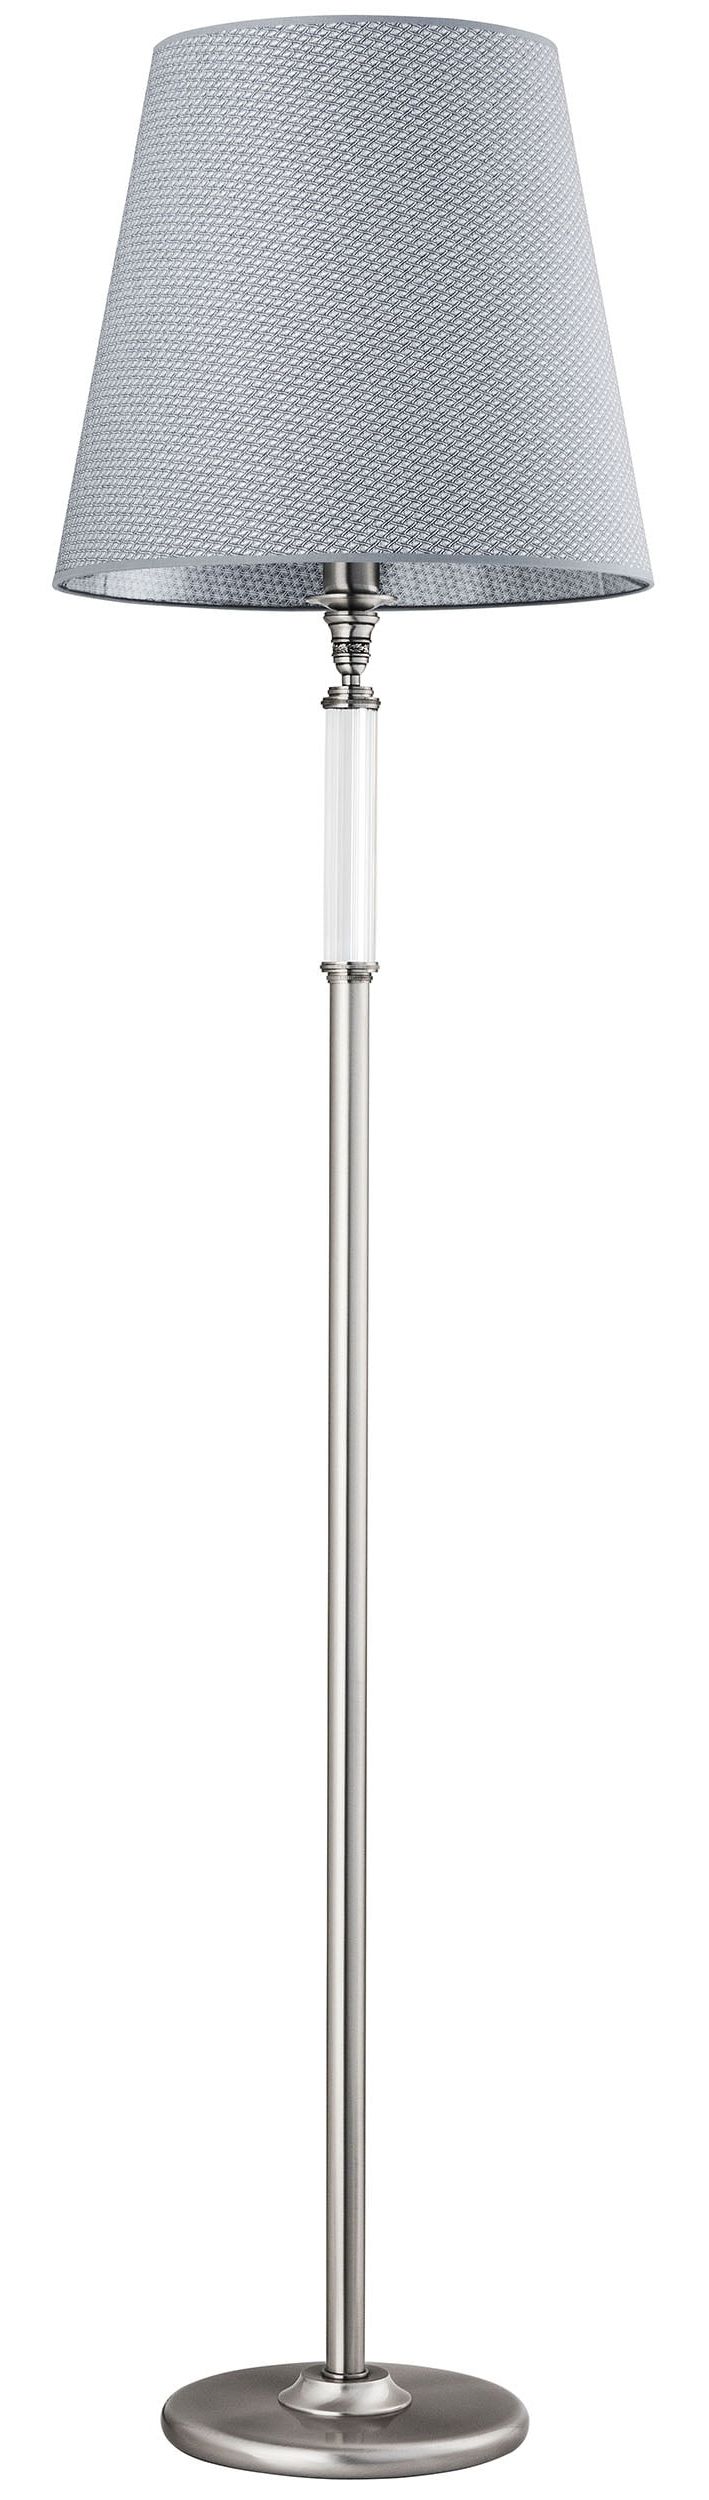 Grey Floor Lamp Napoli Brushed Nickel – Luxury Chandelier For Grey Shade Floor Lamps (View 14 of 20)